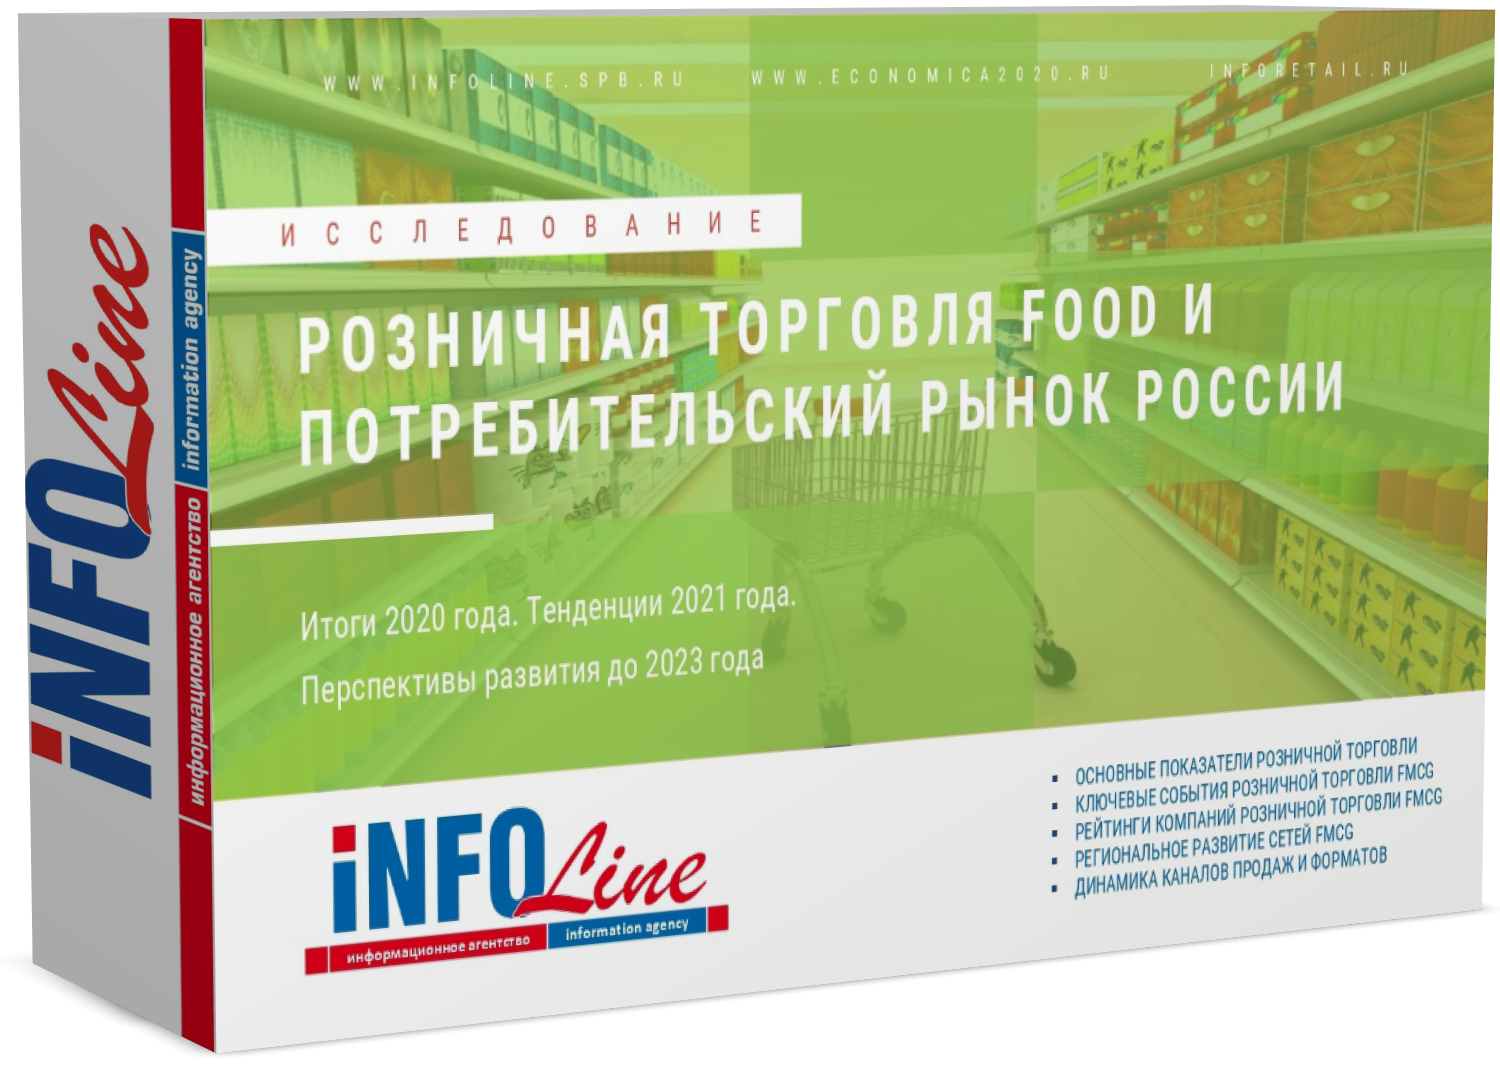 Исследование "Розничная торговля Food и потребительский рынок России 2021 года. Итоги 2020 года и перспективы развития до 2023 года"